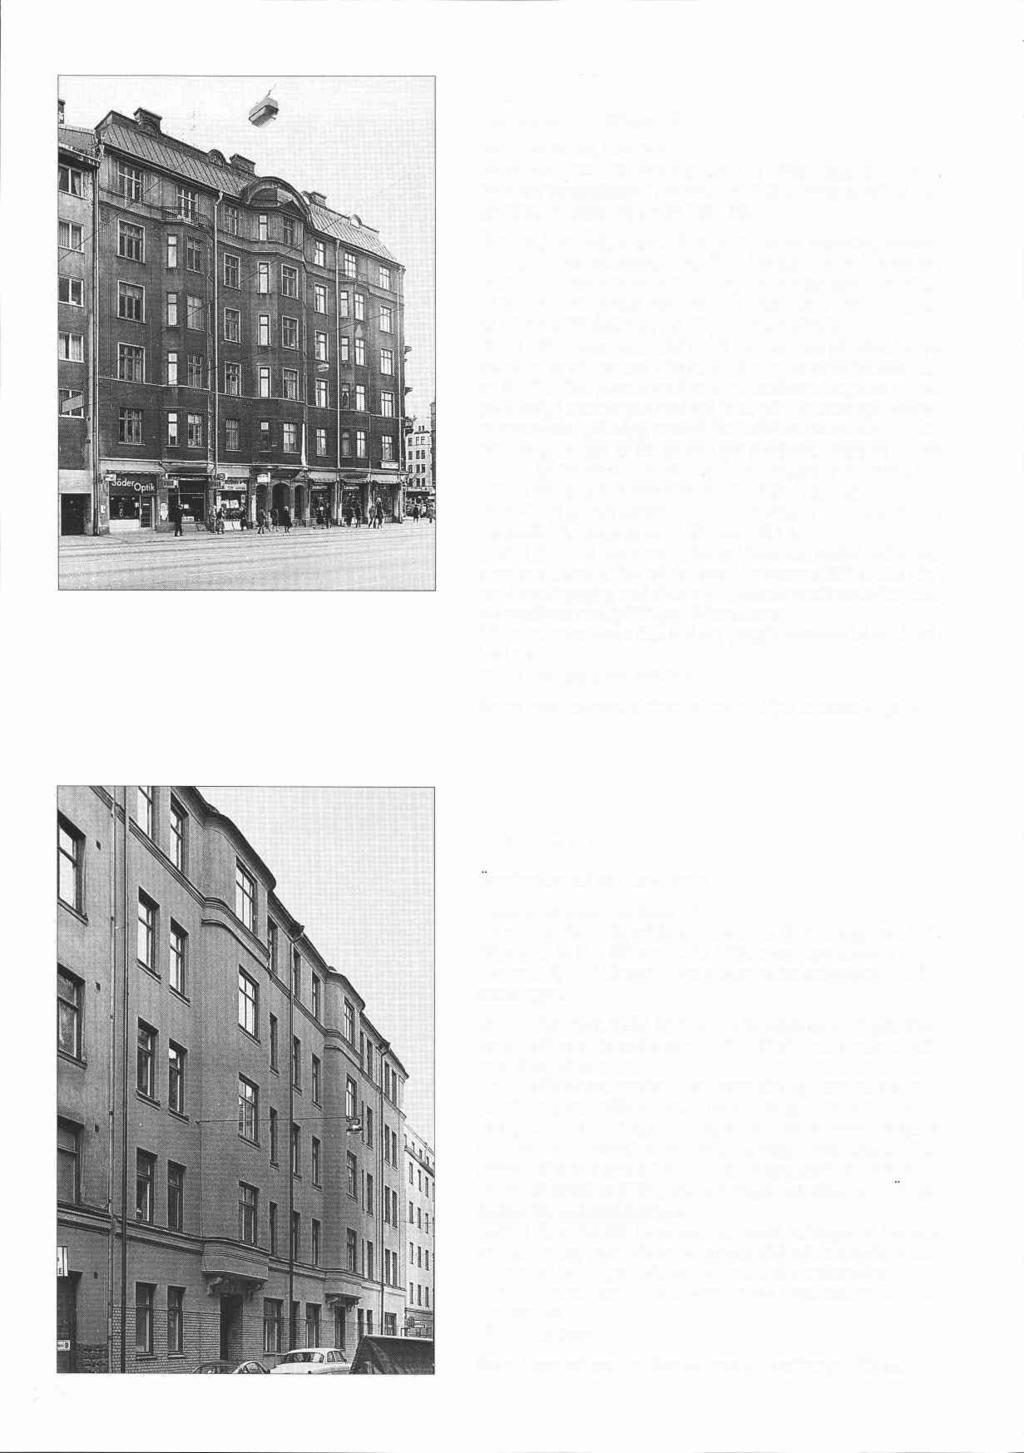 7- Höken 20 -- l Bondegatan 1 A, Götgatan 69 1 Byggnadsår 1907-09, arkitekt Dorph & Höög, byggherre B K K Jernberg, byggmästare J Brandel. Bad 1930.